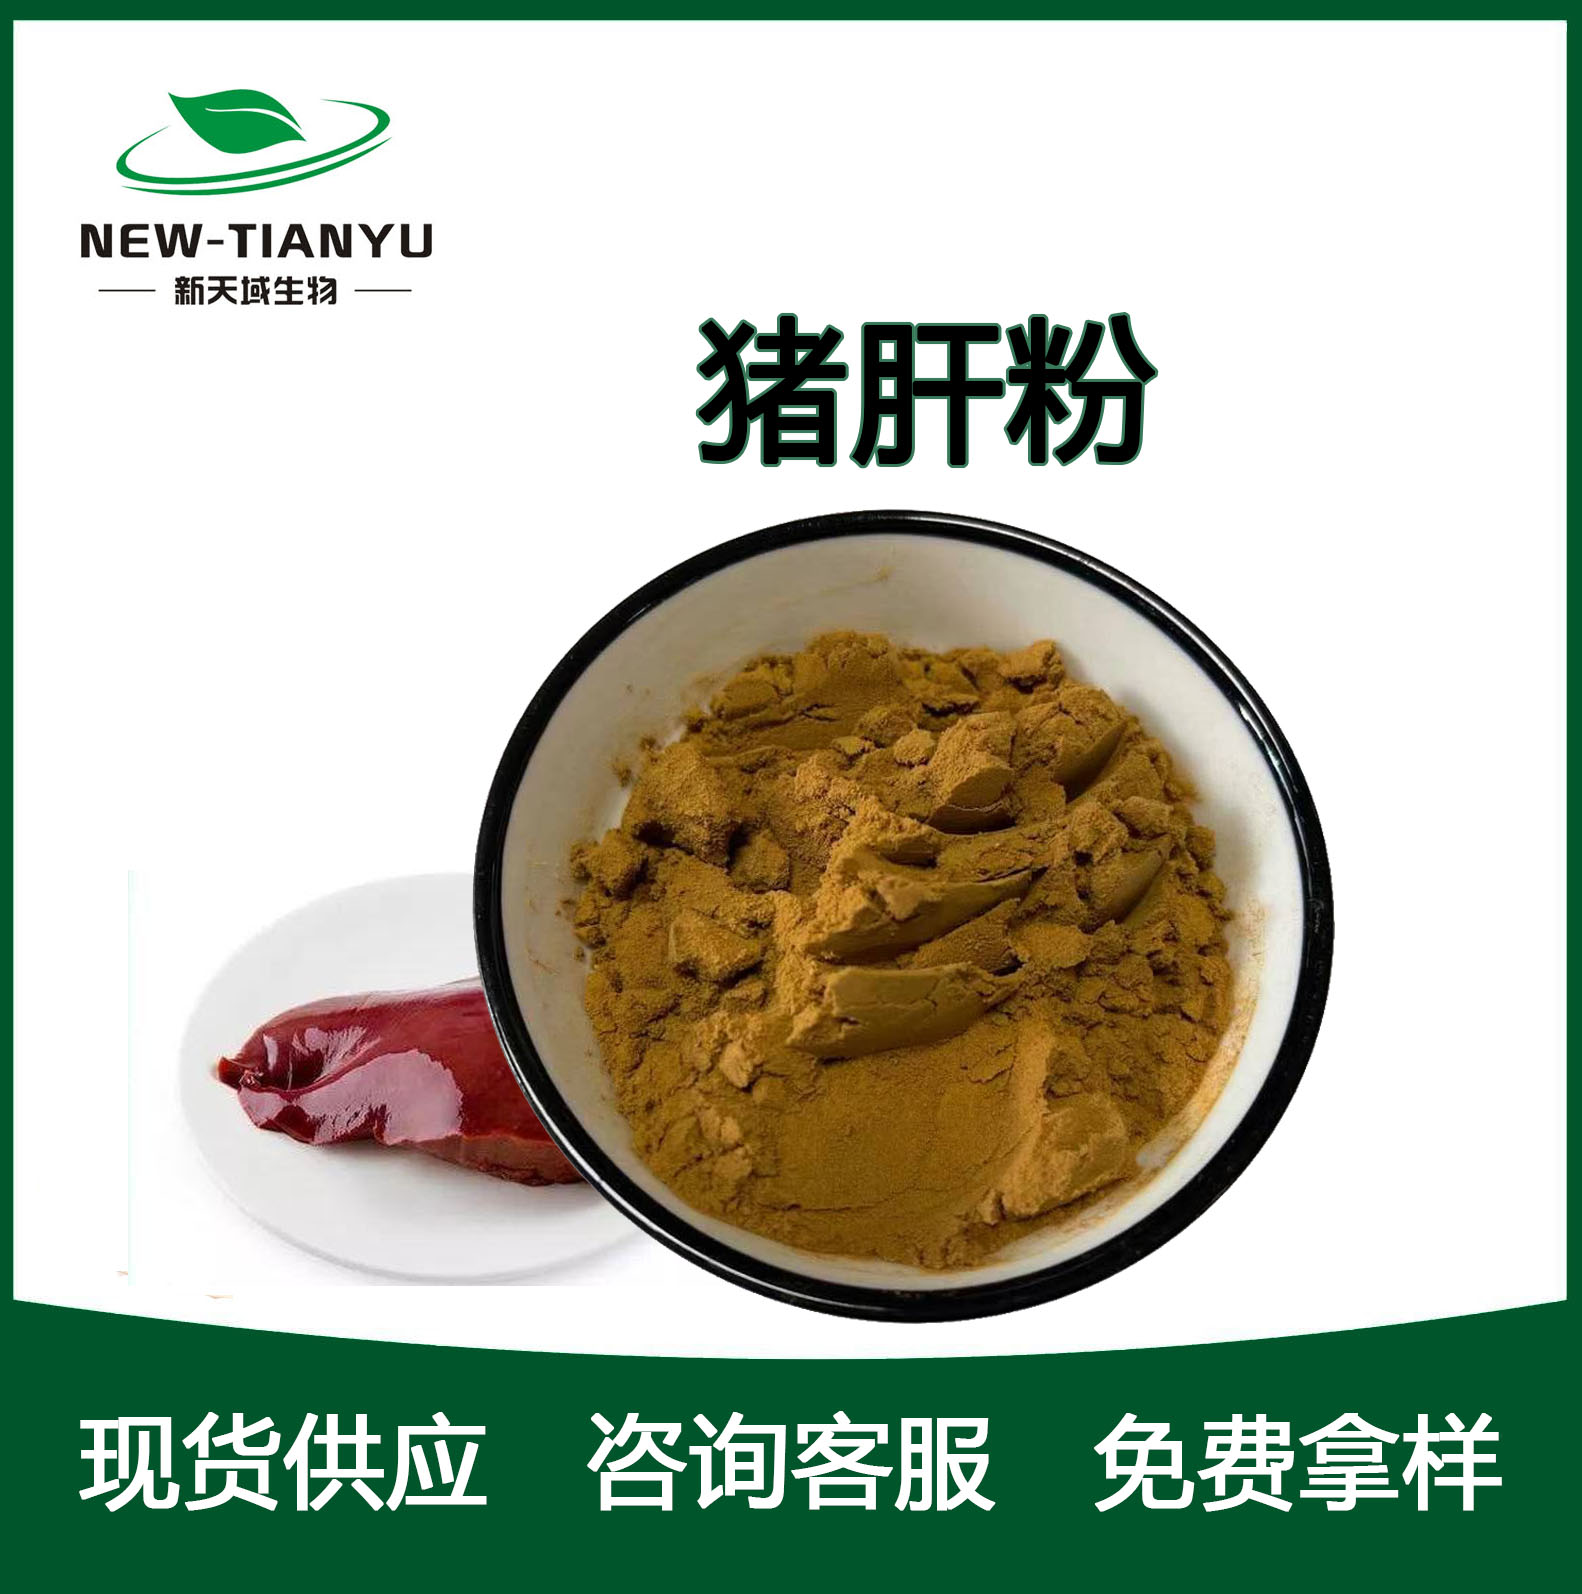 猪肝粉,Pig liver powder